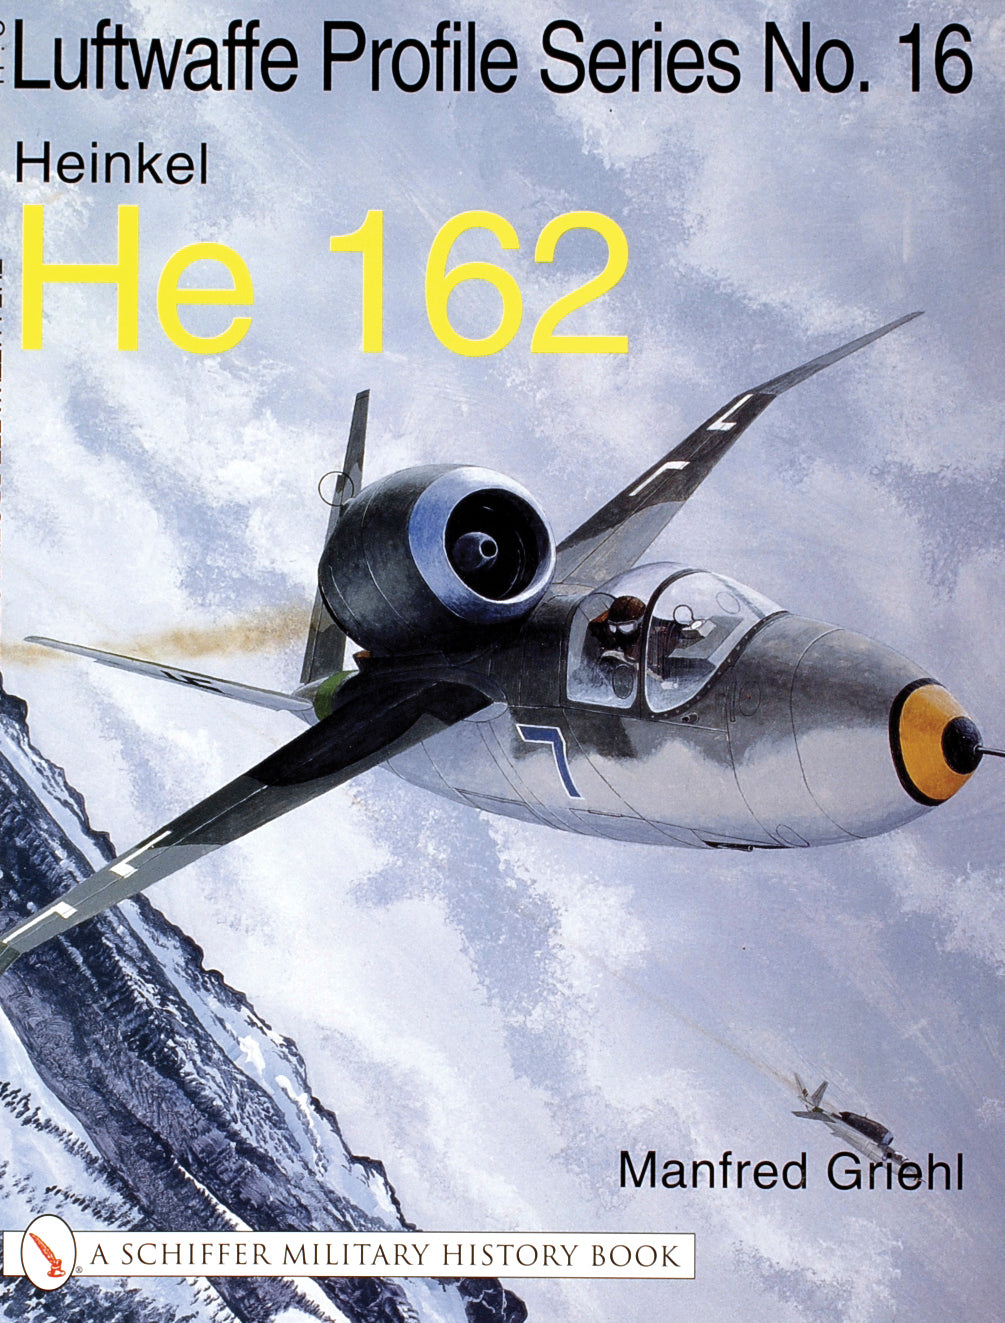 Die Luftwaffen-Profilserie Nr. 16 